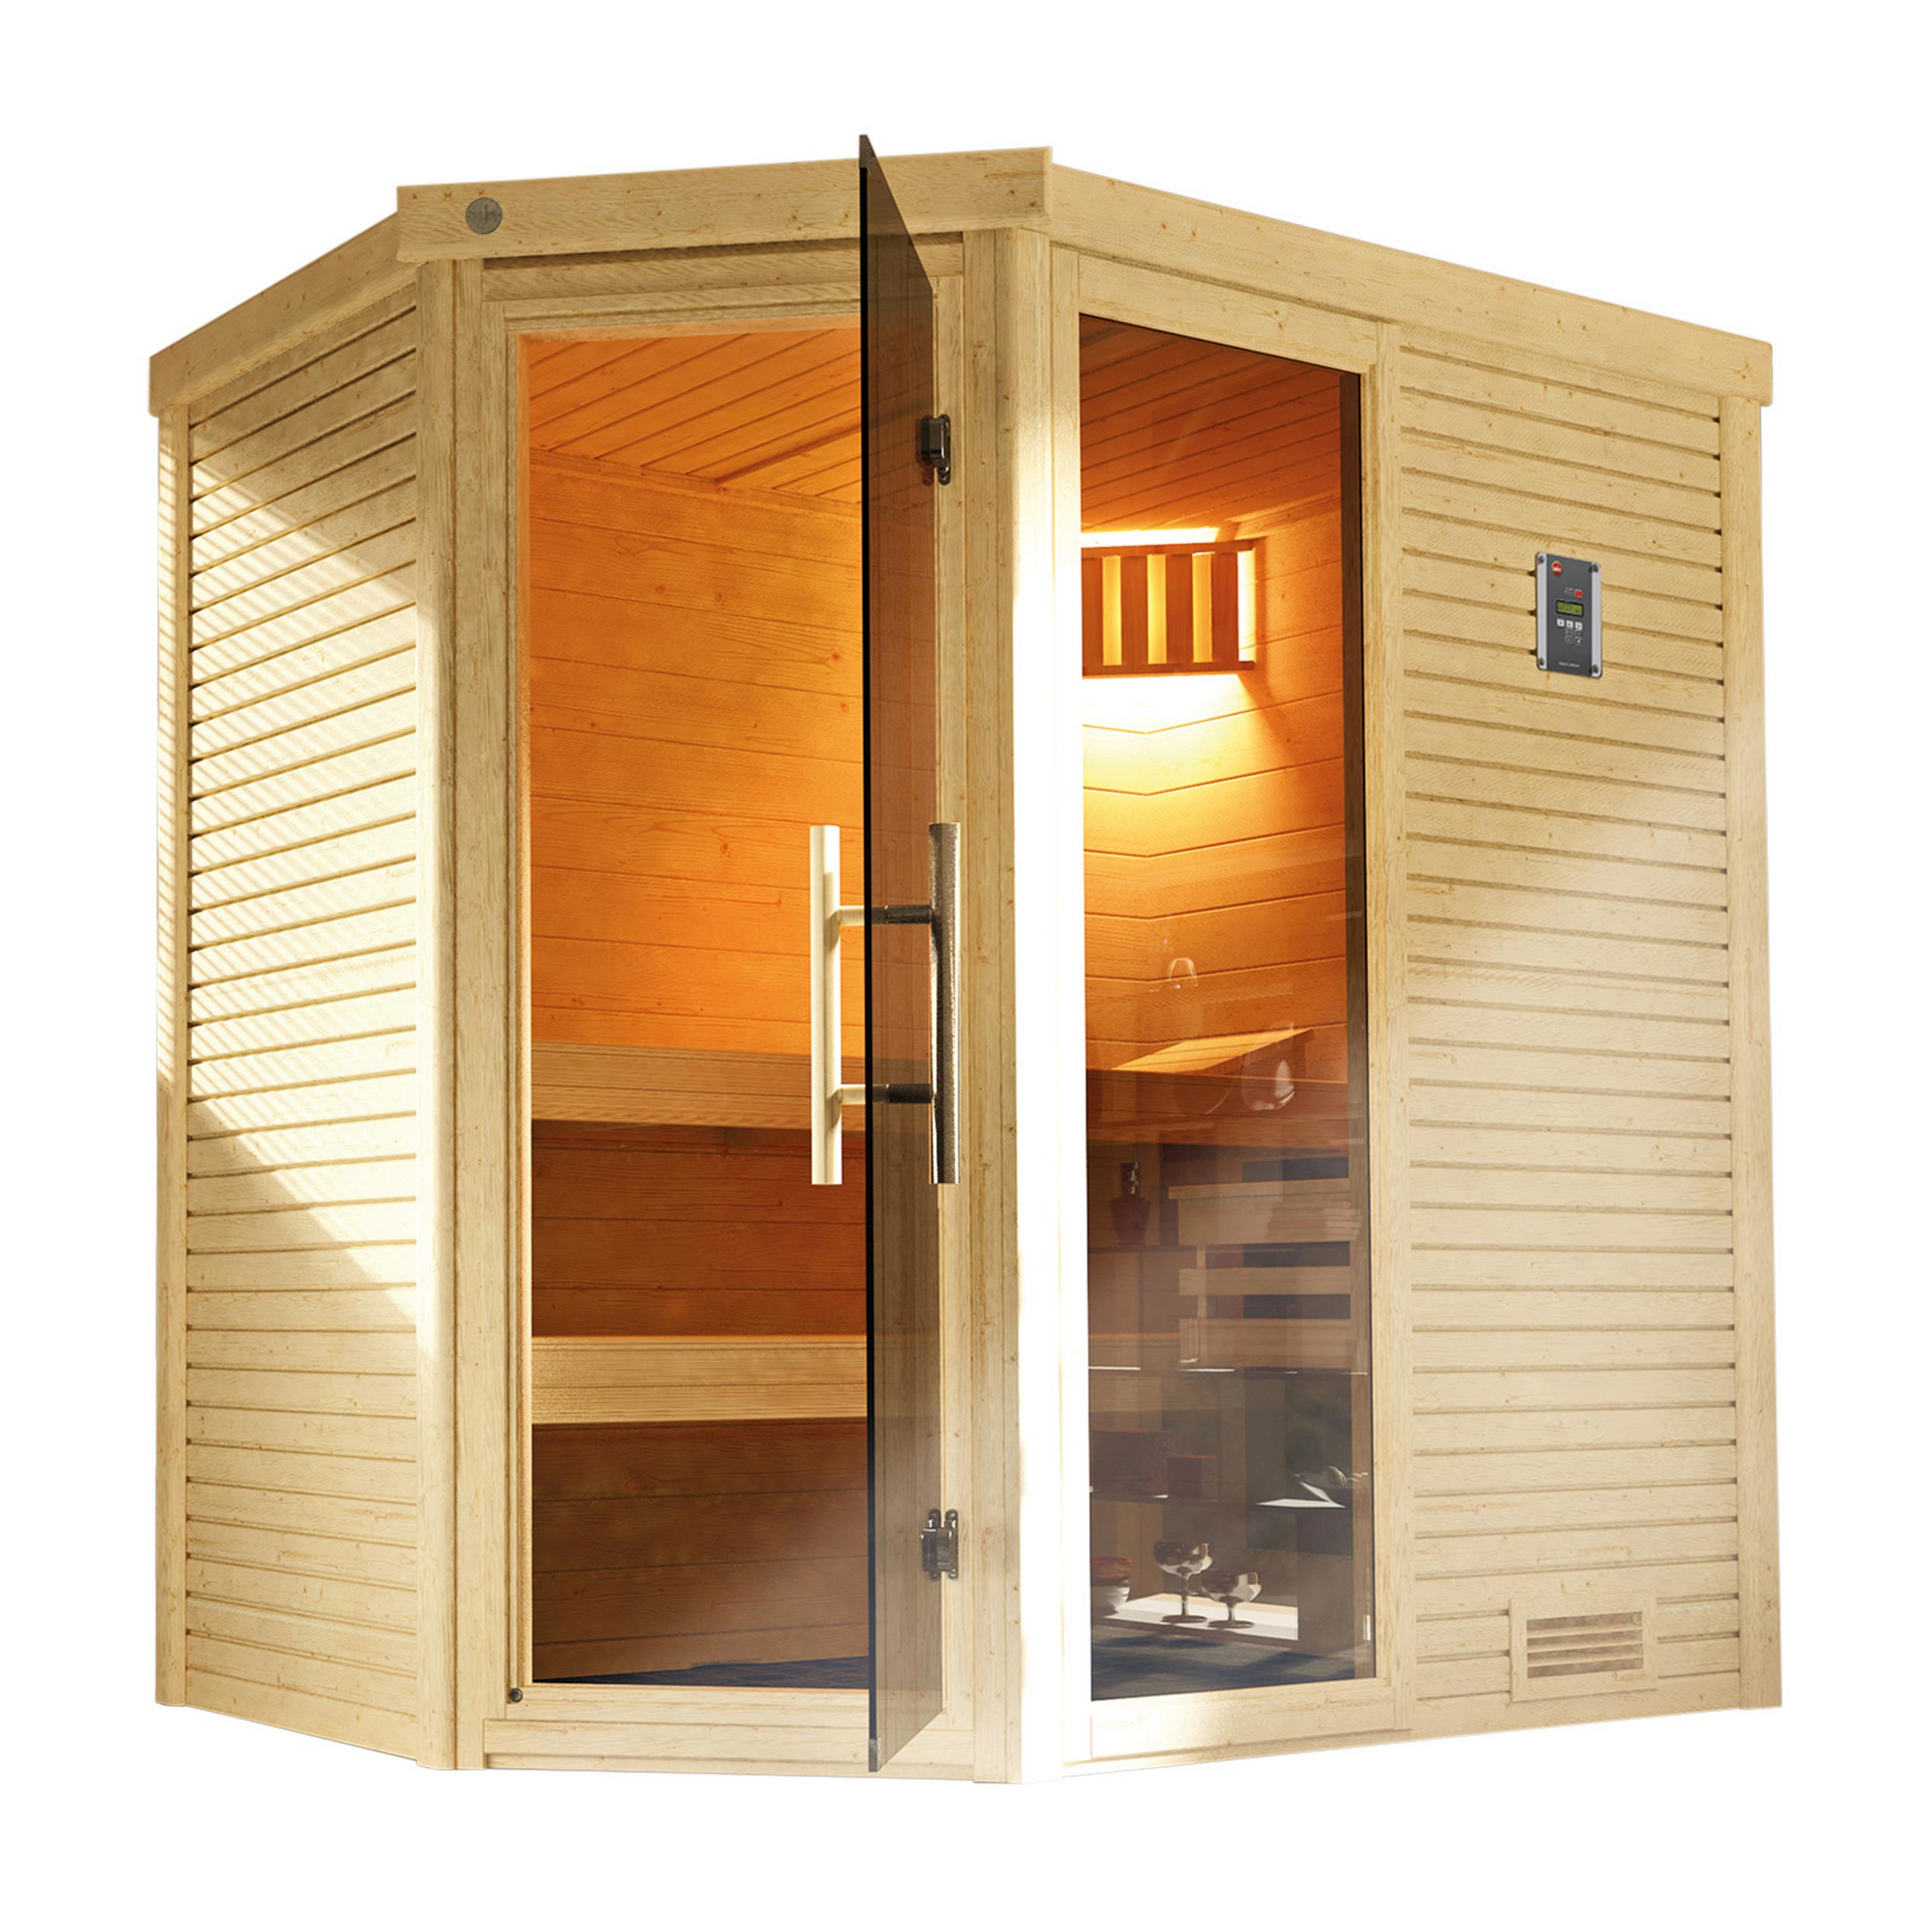 Design-Sauna 'Cubilis 2' mit 7,5 kW BioS-Ofenset, Steuerung, Glastür, Fenster 198 x 198 x 205 cm + product picture